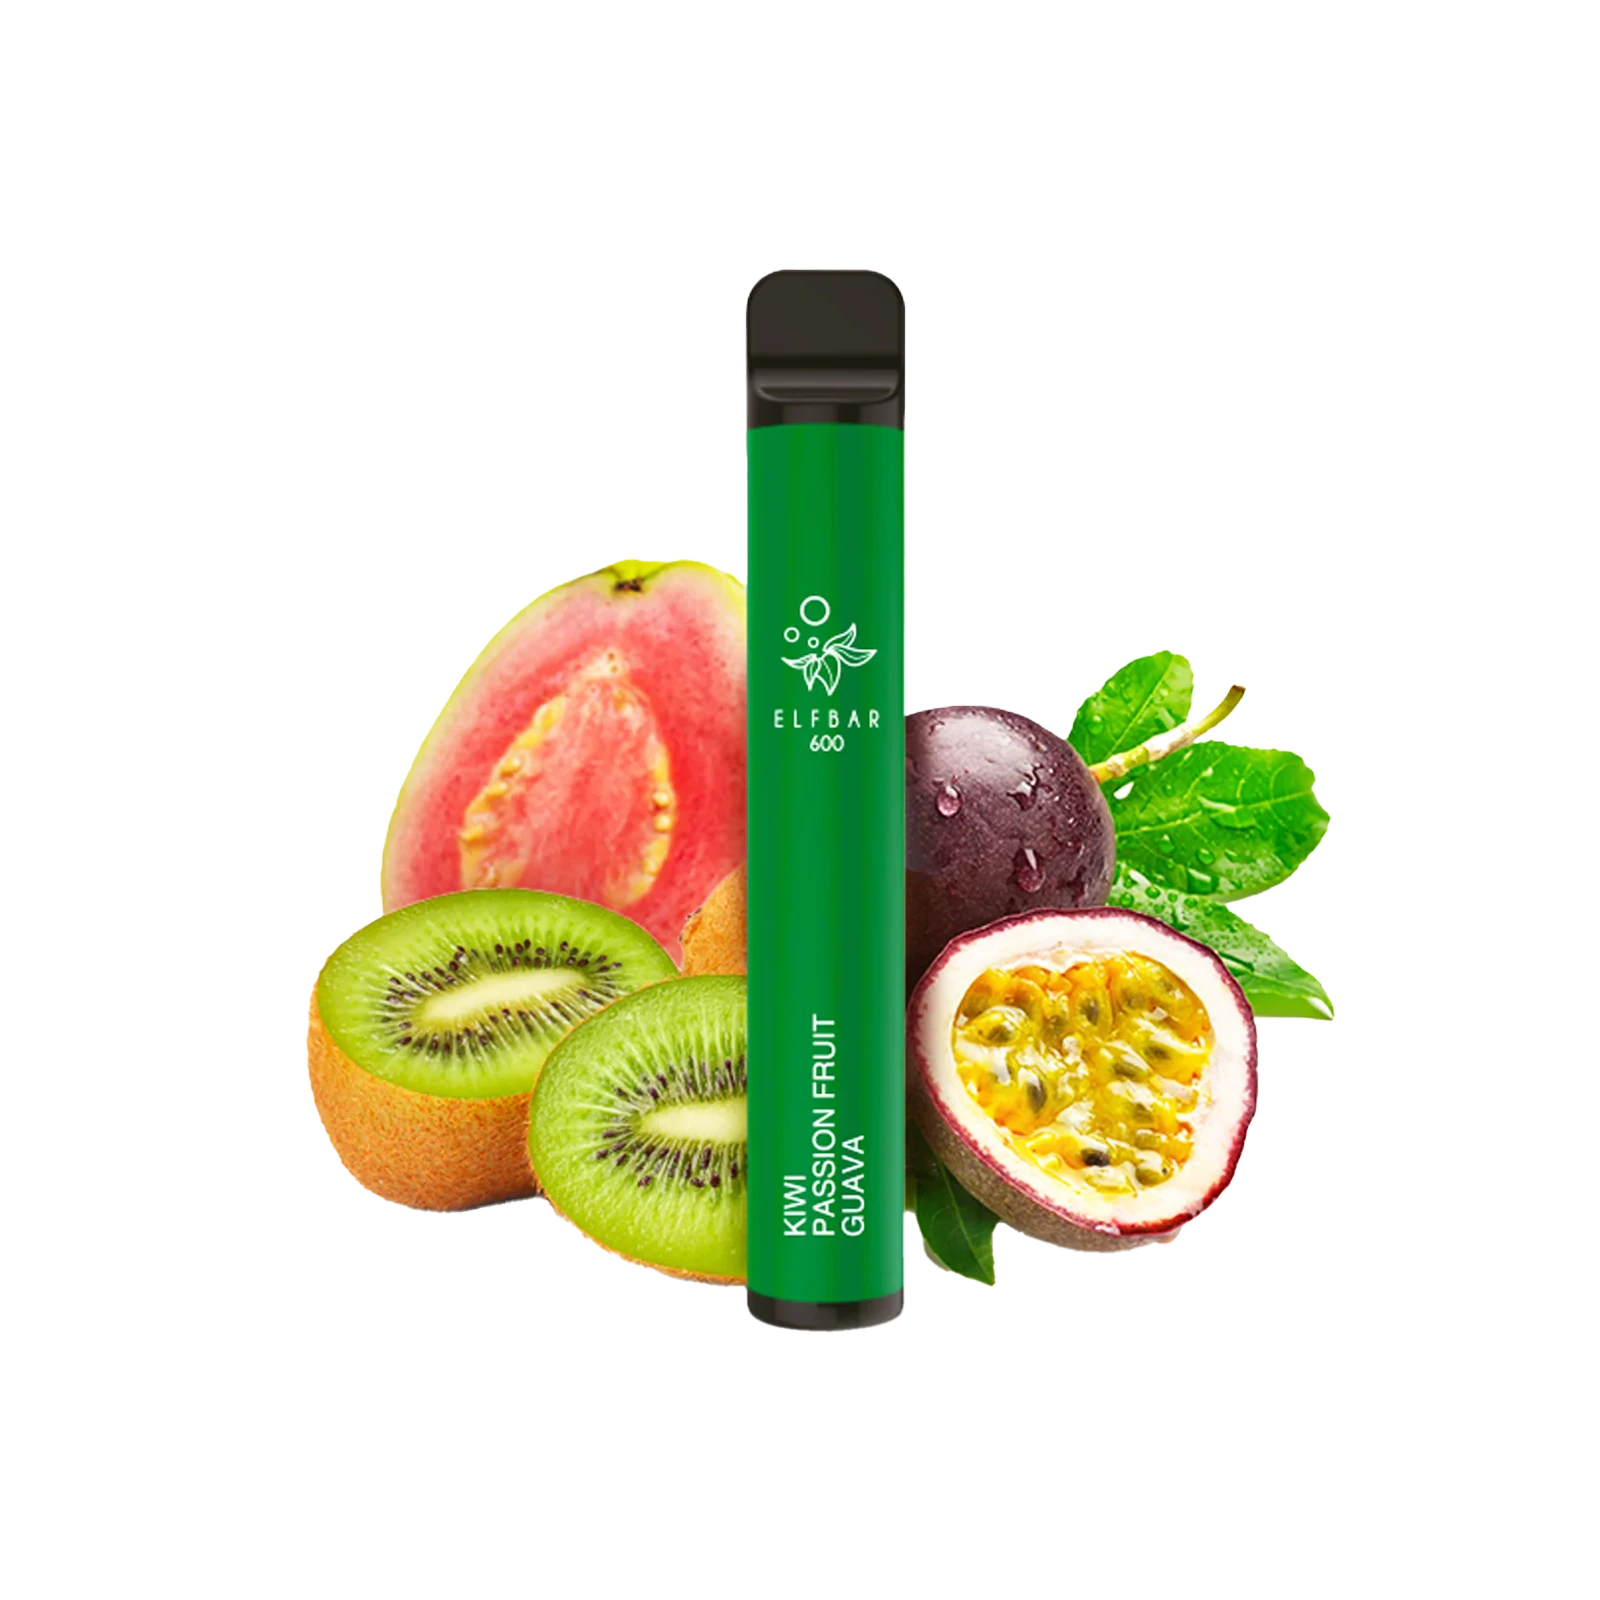 Elf Bar 600 - Kiwi Passionfruit Guave - E-Cigarette - Vapestick - 20 mg